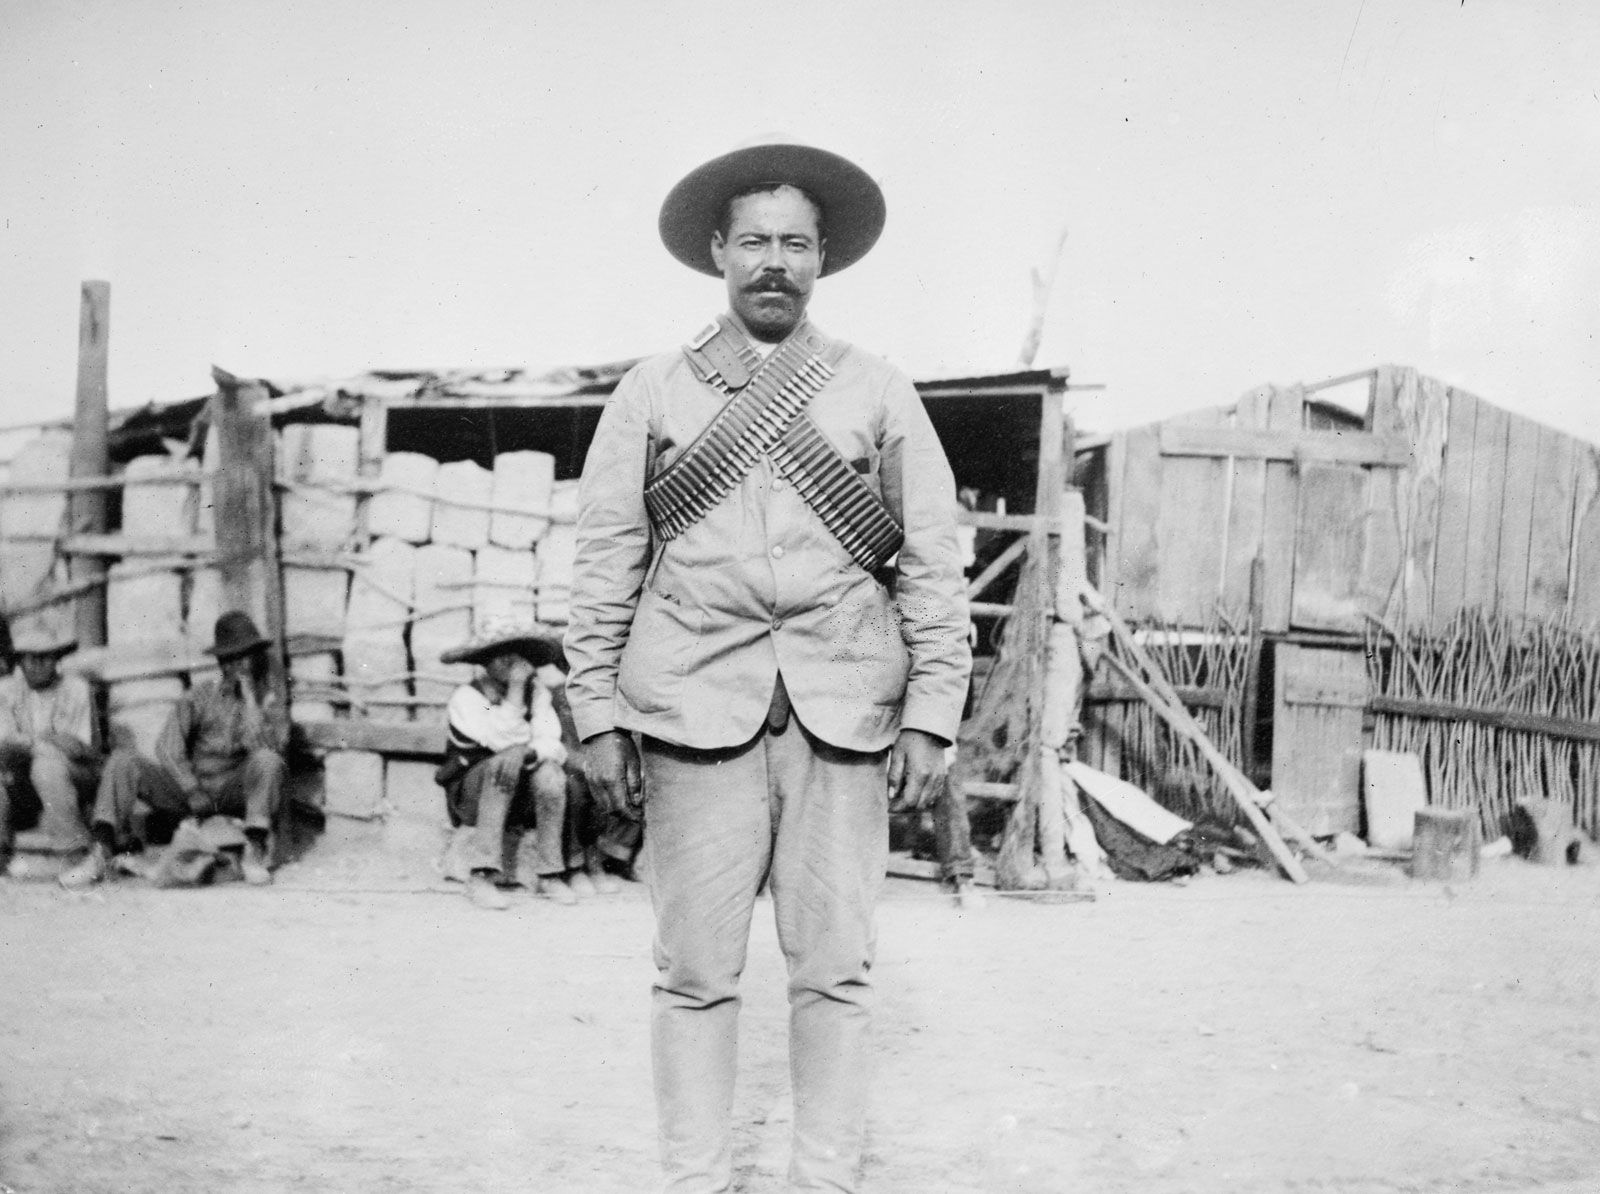  Biografi Pancho Villa